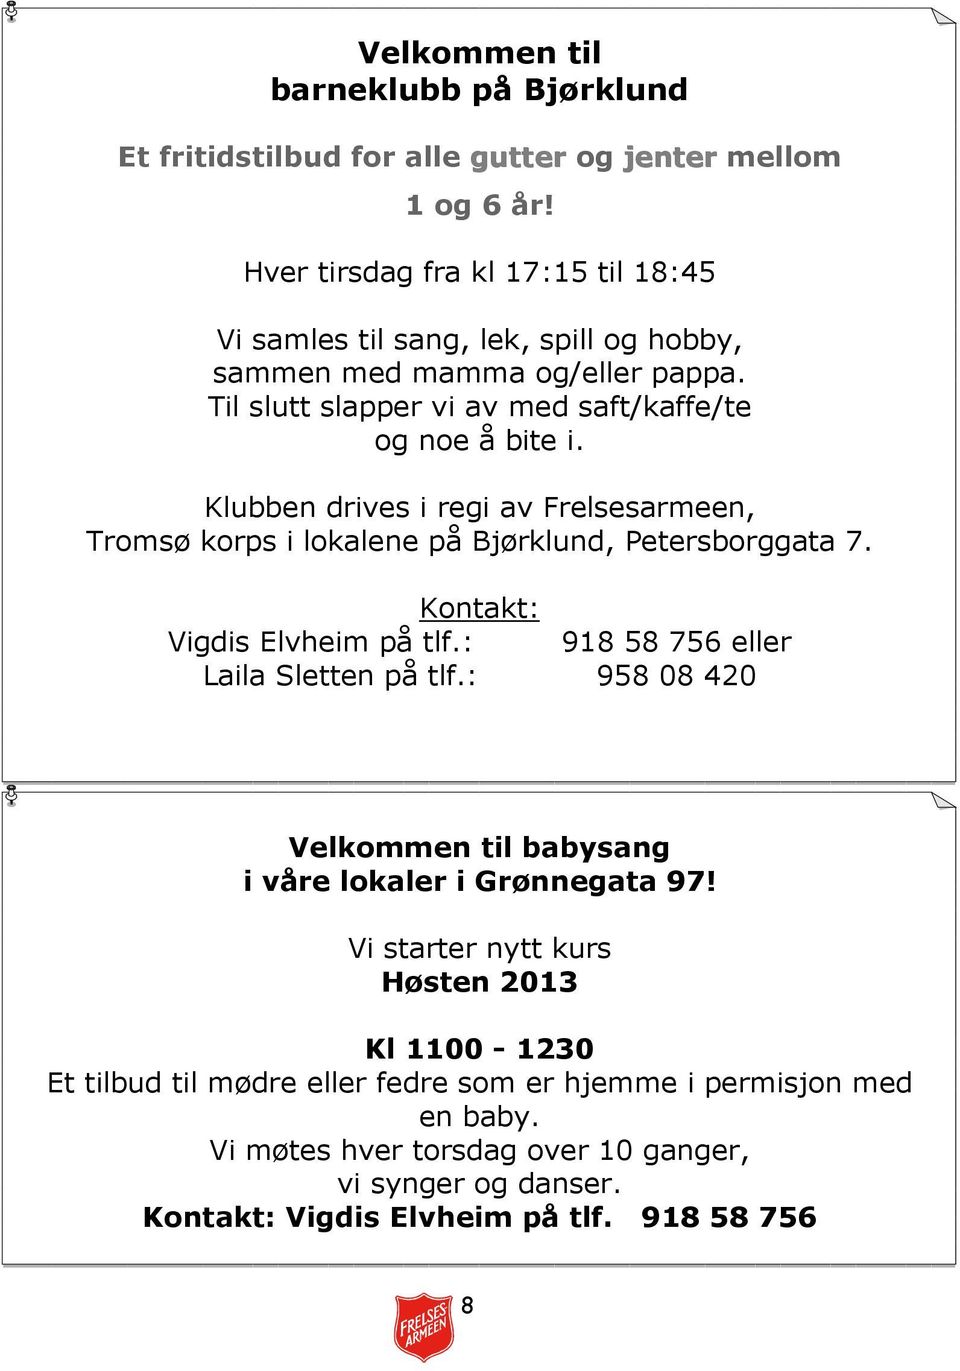 Klubben drives i regi av Frelsesarmeen, Tromsø korps i lokalene på Bjørklund, Petersborggata 7. Kontakt: Vigdis Elvheim på tlf.: 918 58 756 eller Laila Sletten på tlf.